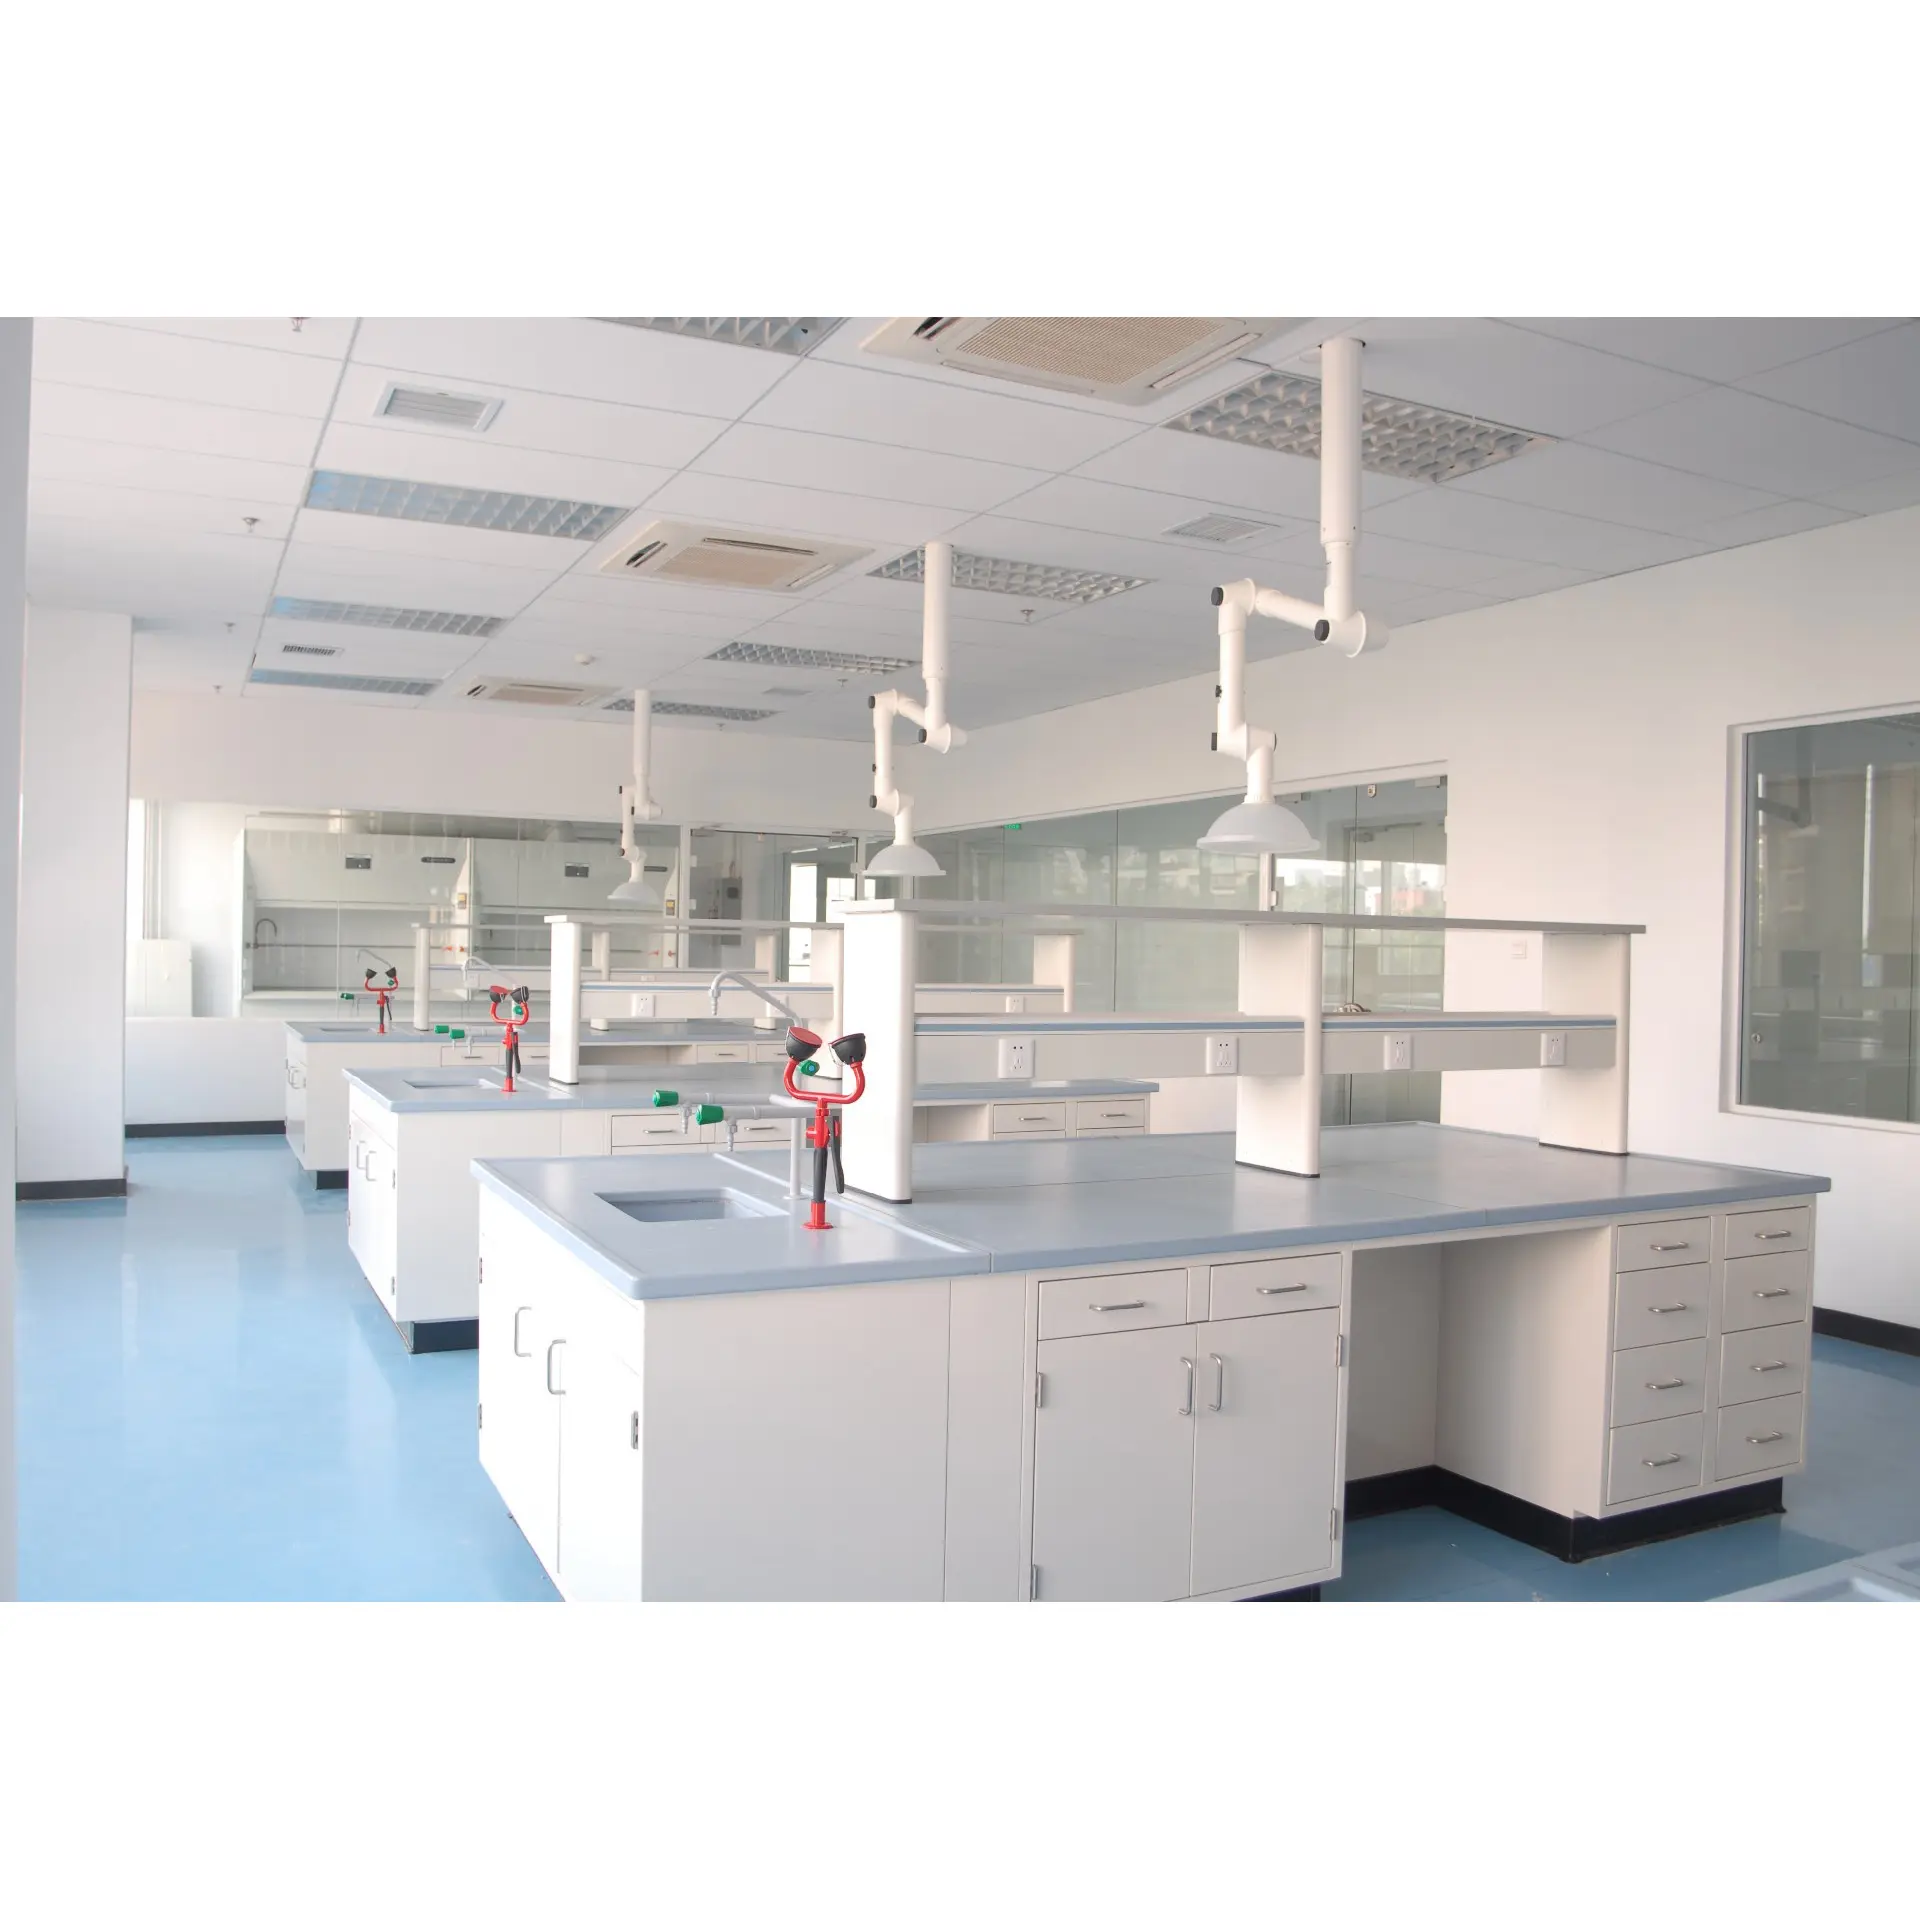 Laboratorio de decoración para banco de laboratorio, suministro de energía con certificación CE, estándar europeo, mobiliario brillante y limpio